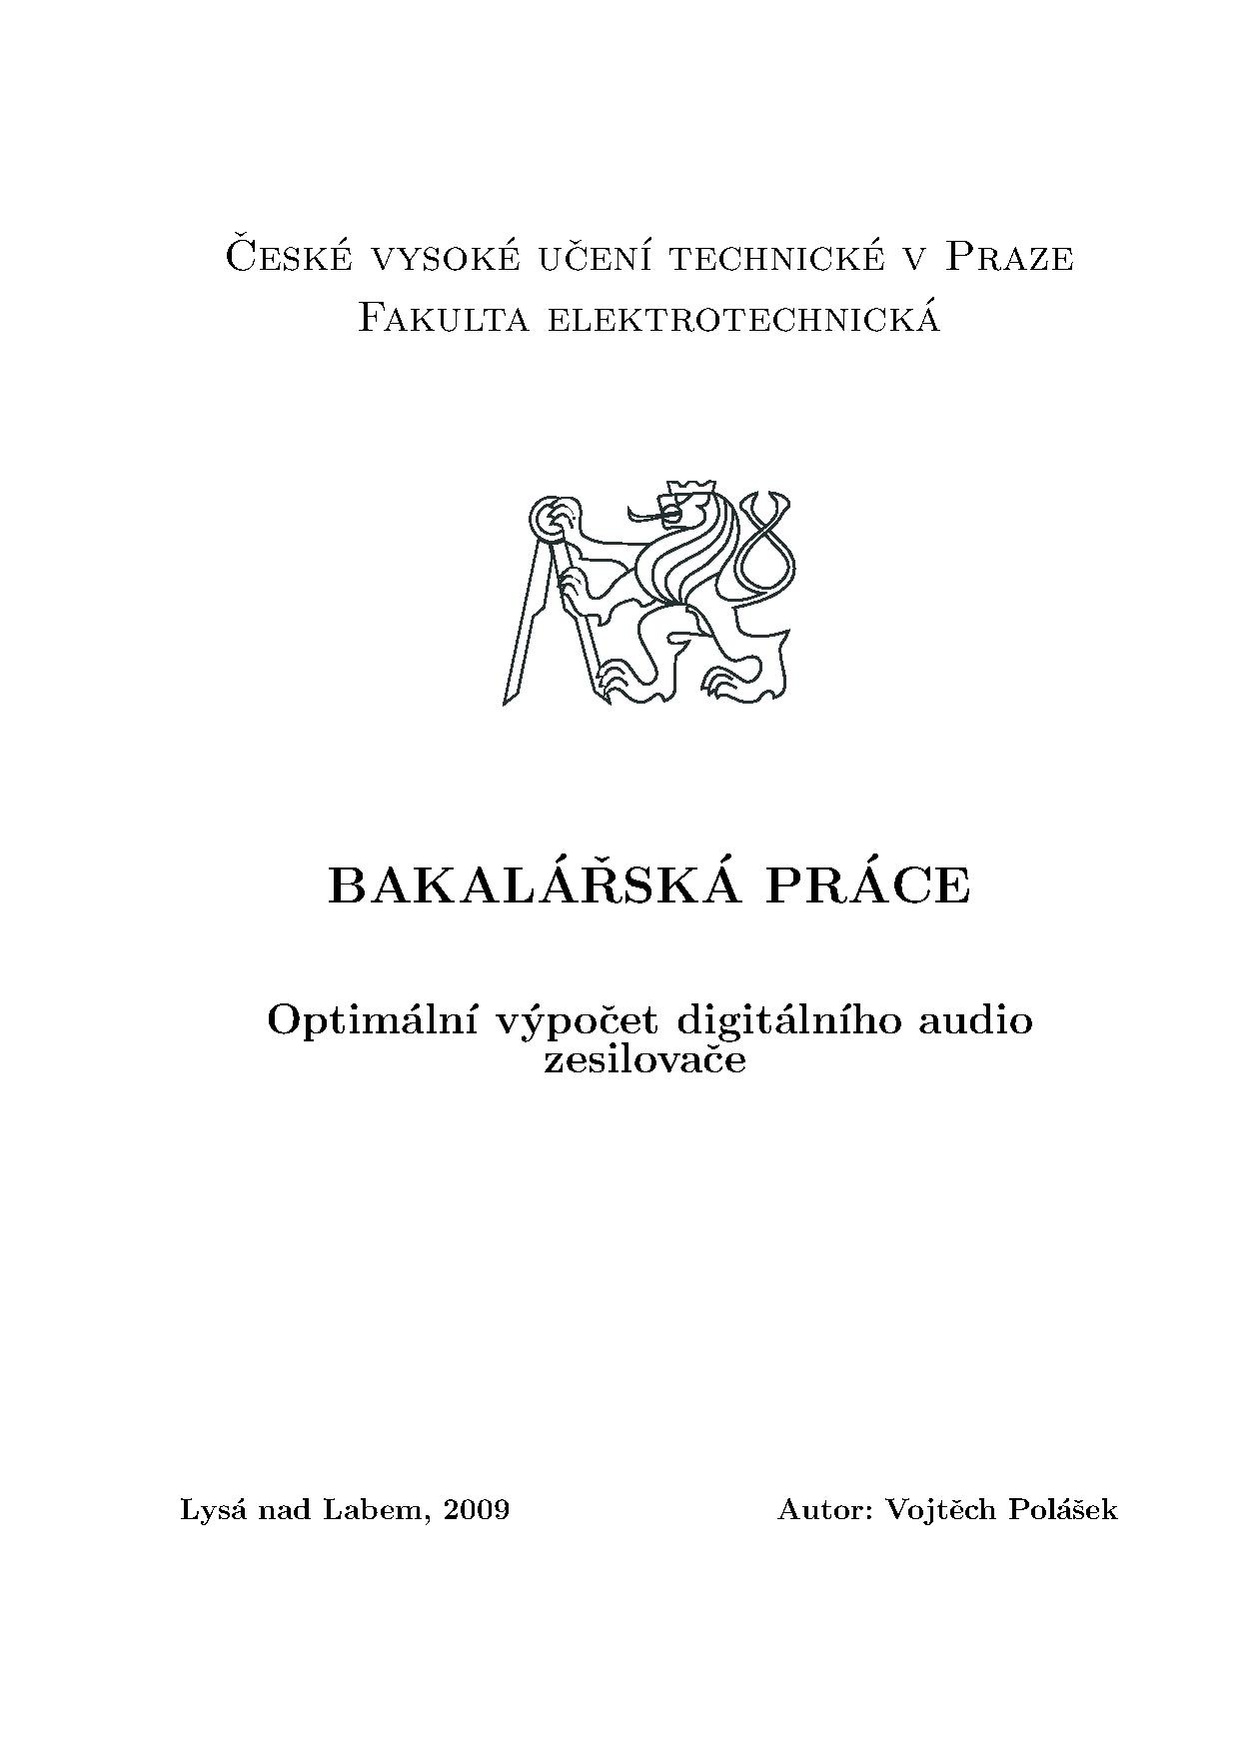 Bp 2009 polasek vojtech.pdf